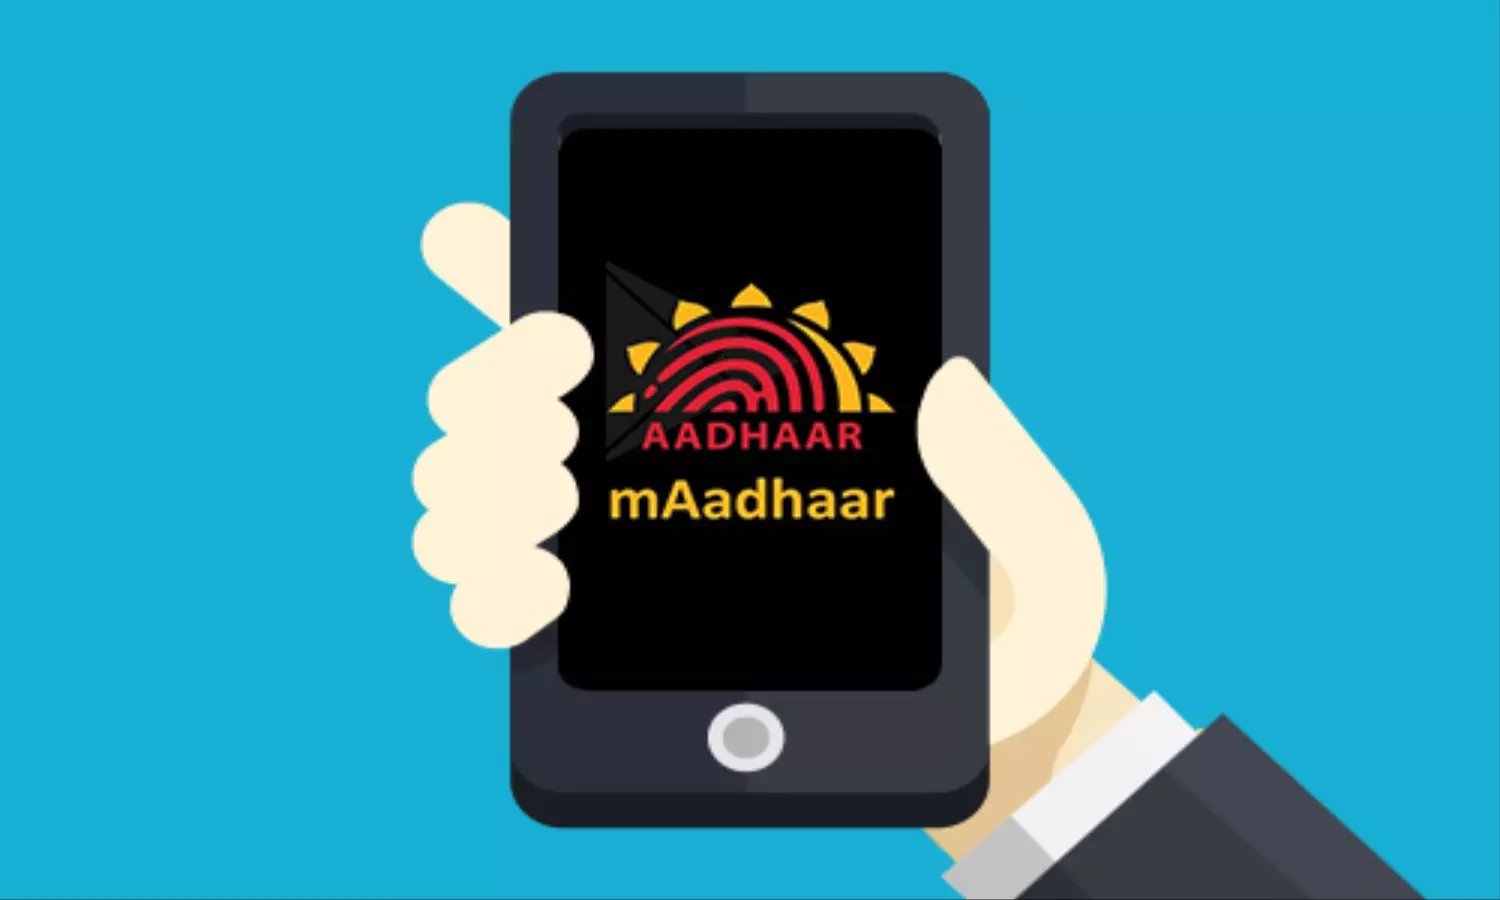 mAadhaar: एक Aadhaar अकाउंट से जोड़े परिवार के बाकी सदस्यों की प्रोफाइल, आसान है तरीका